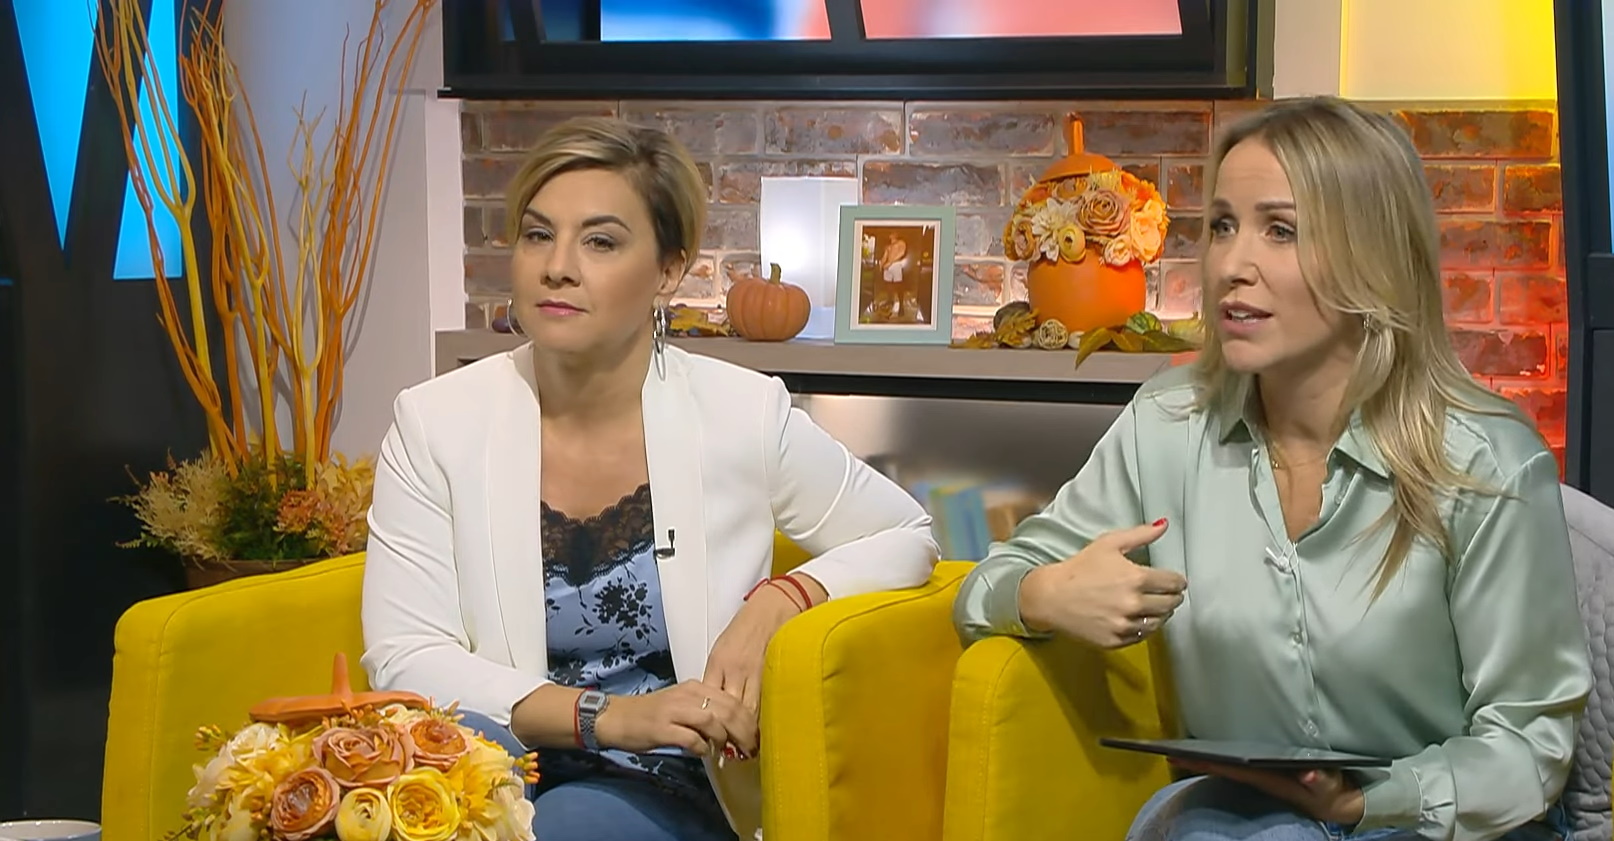 Berki Krisztián keményen visszaszólt Ábel Anitának a Life TV botrányos interjúja miatt